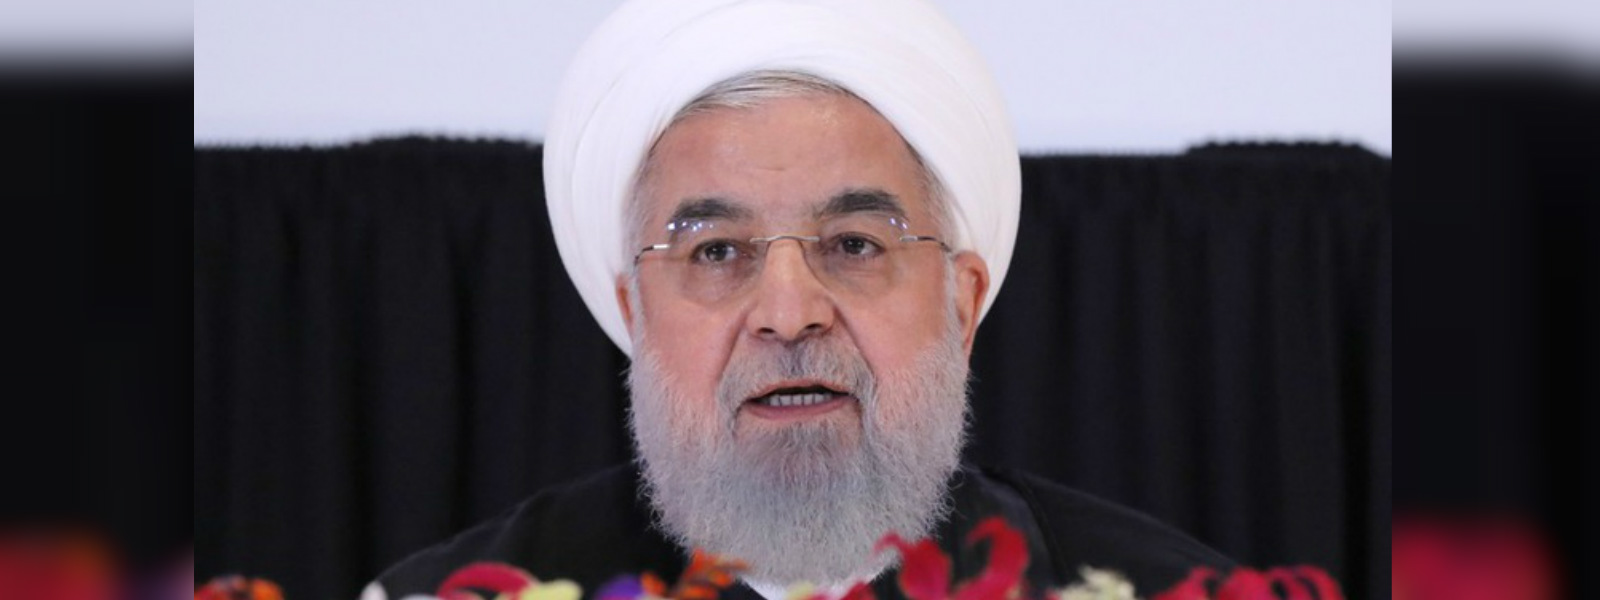 U.S. wants 'regime change' in Iran - Rouhani